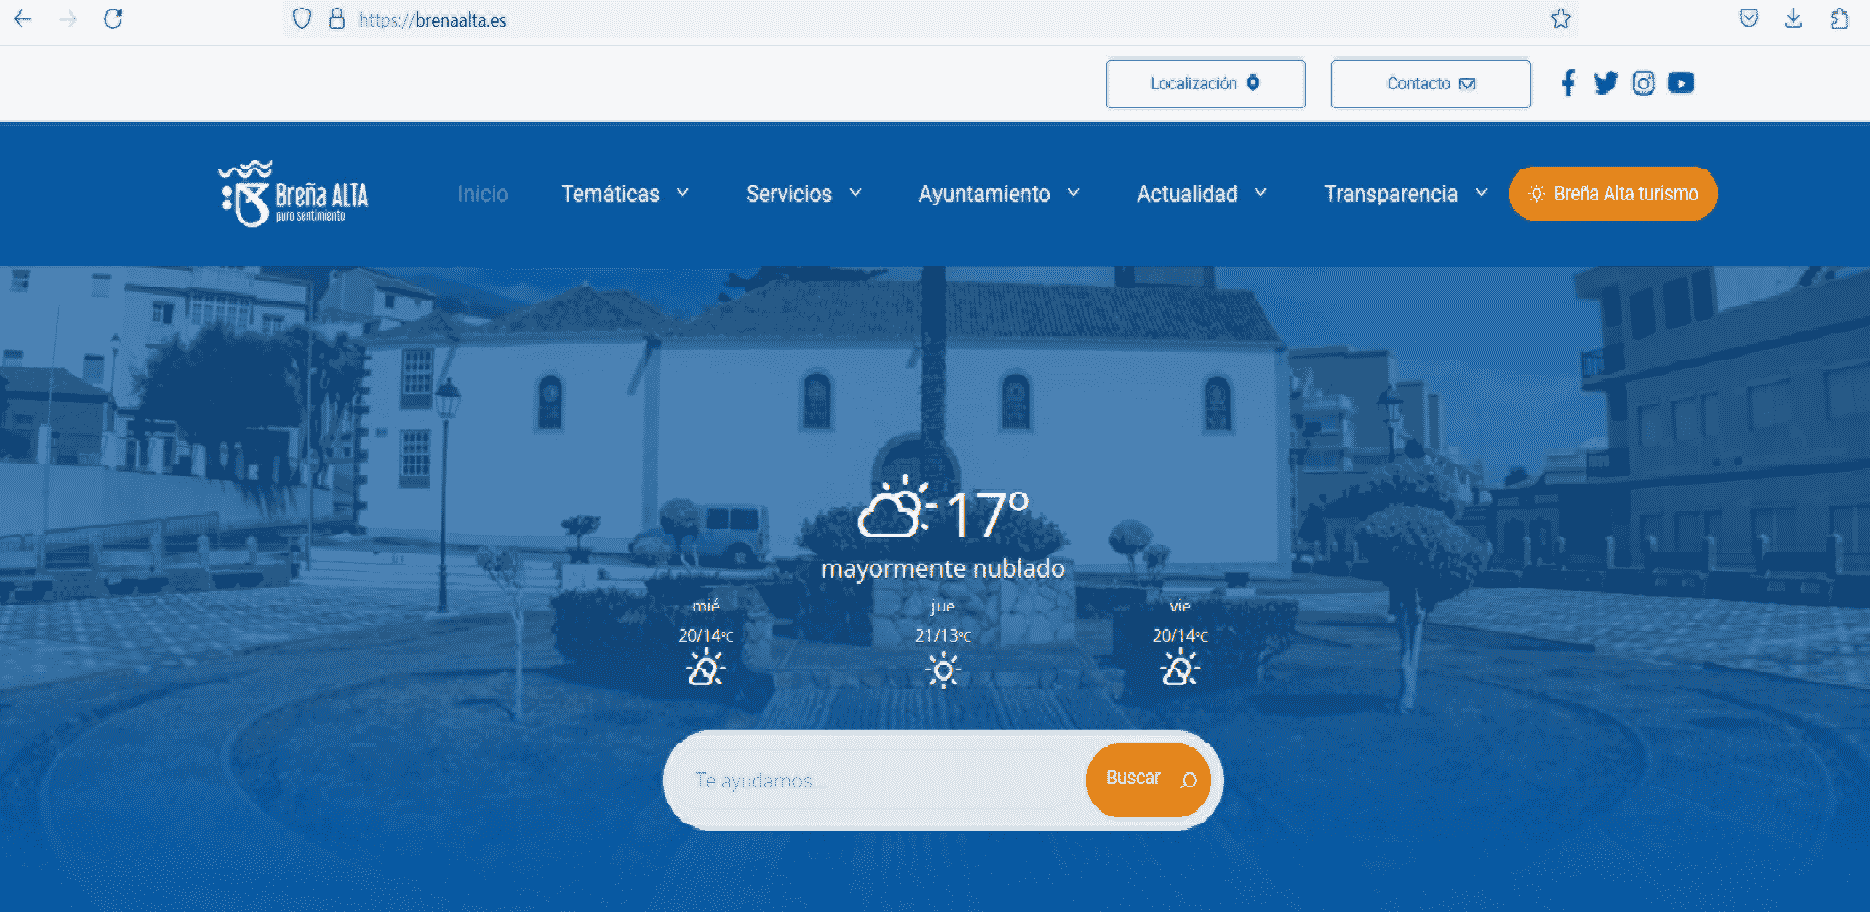 El Ayuntamiento de Breña Alta estrena una nueva web más moderna, visual y accesible